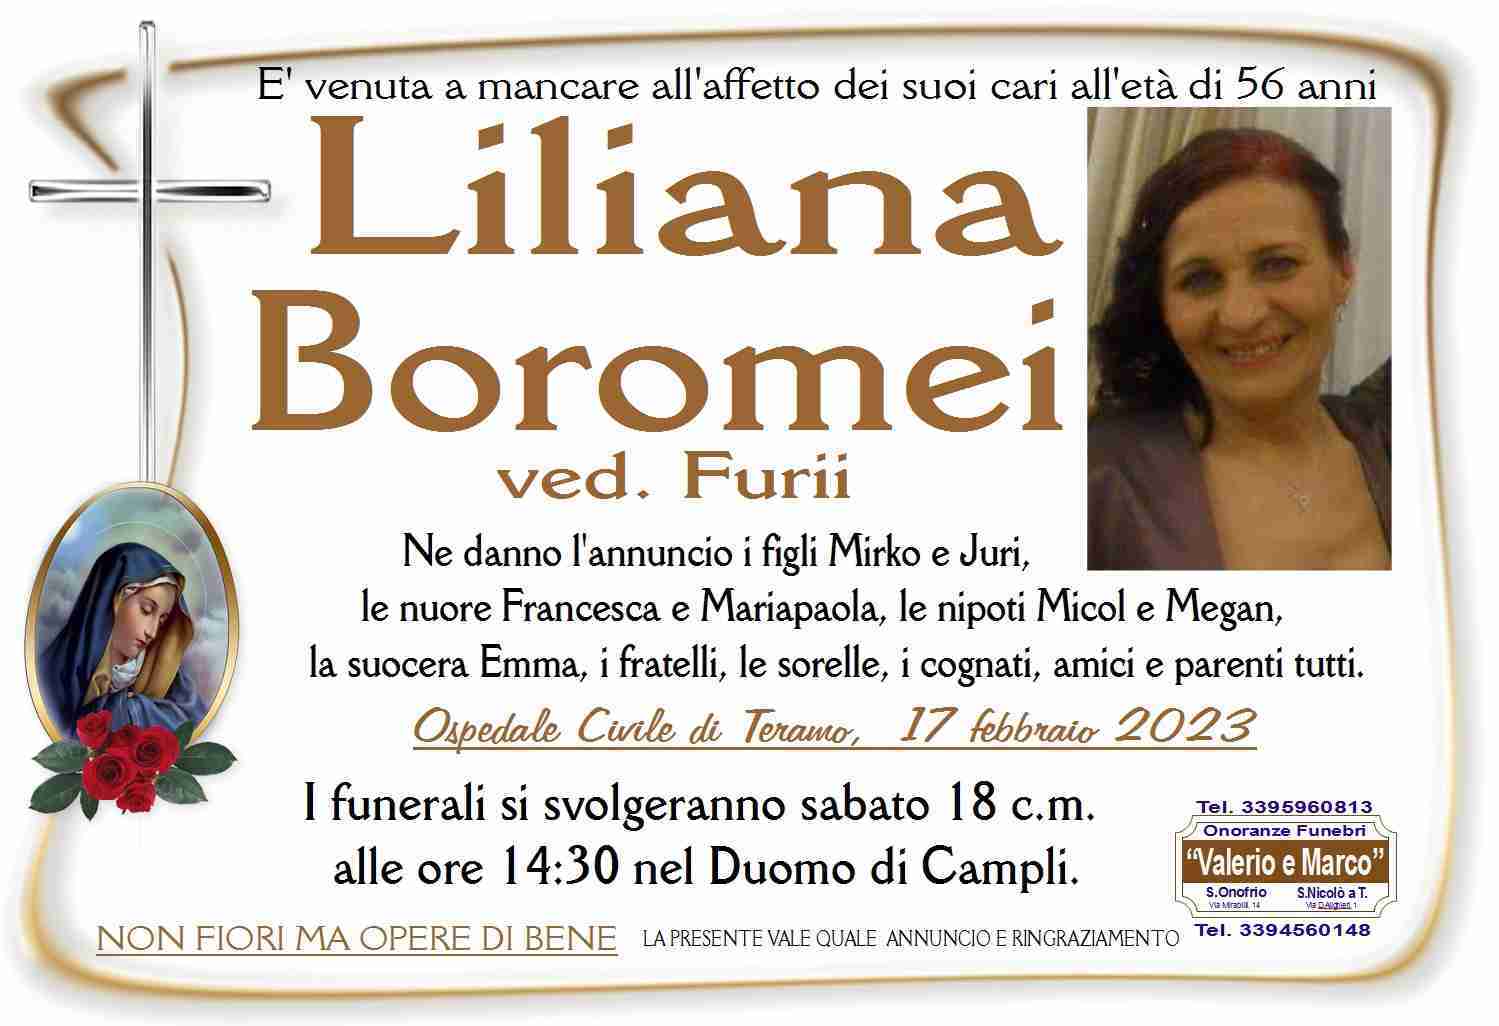 Liliana Boromei